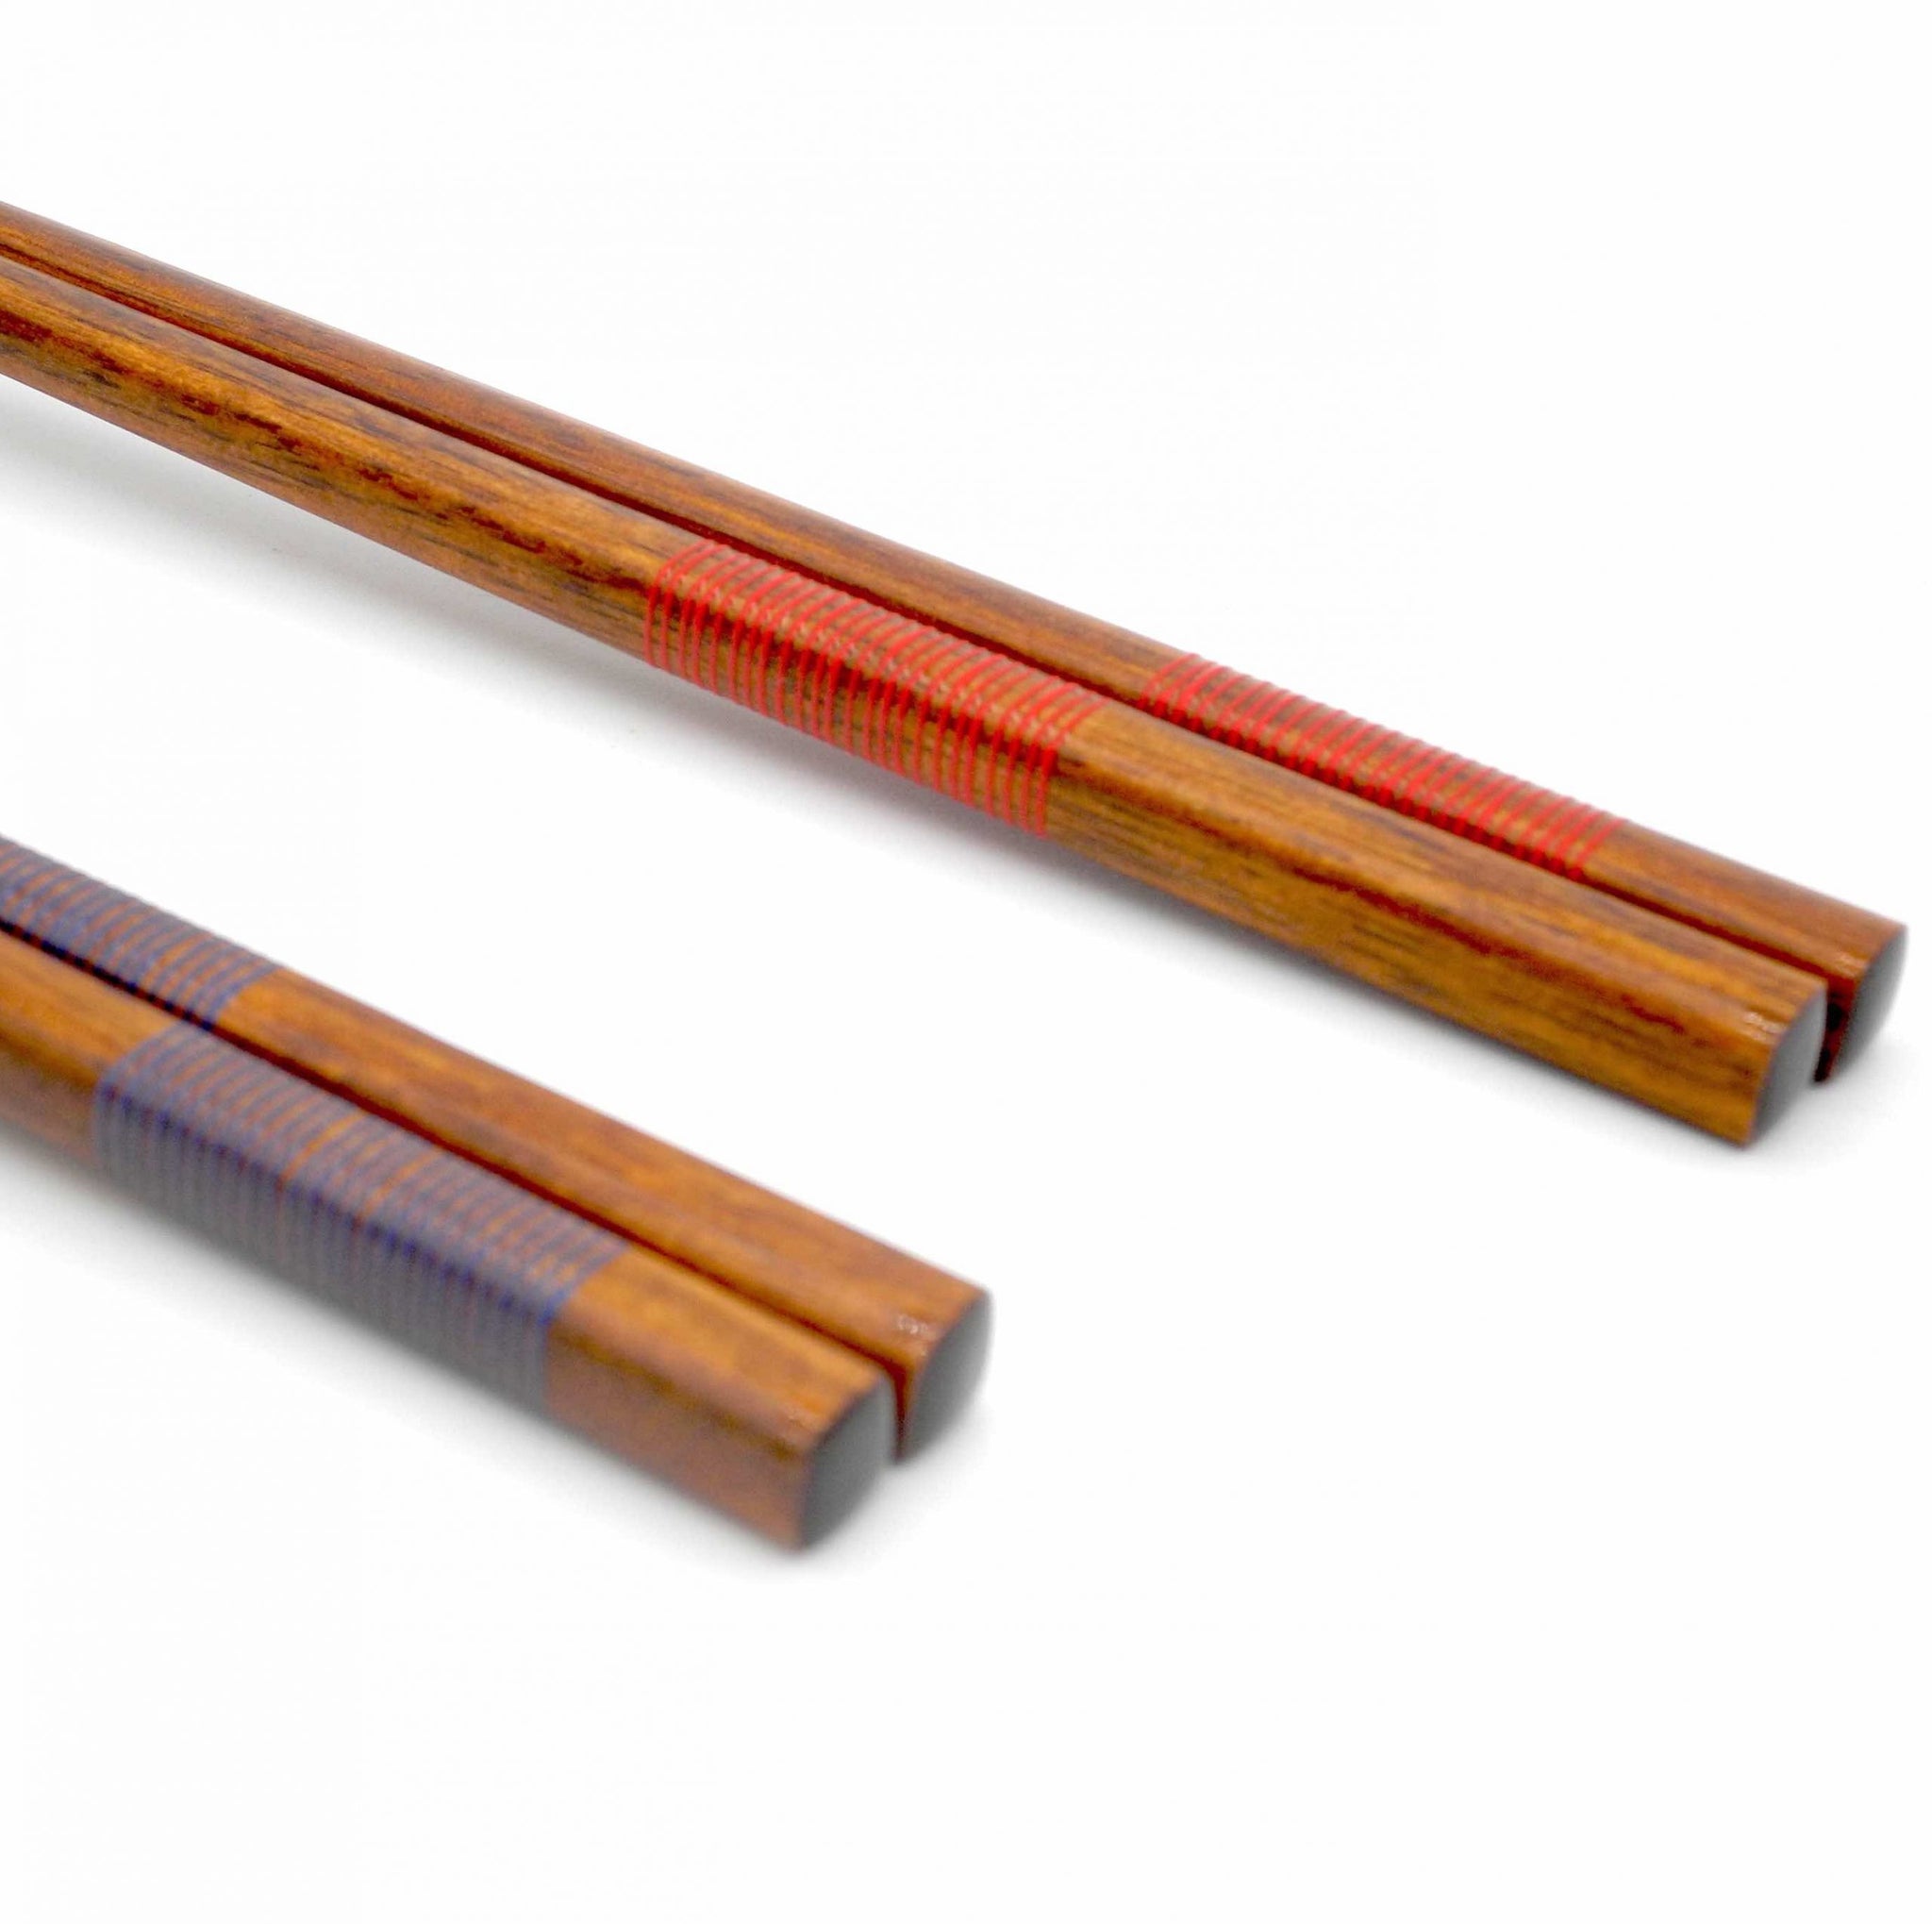 Wooden Chopsticks